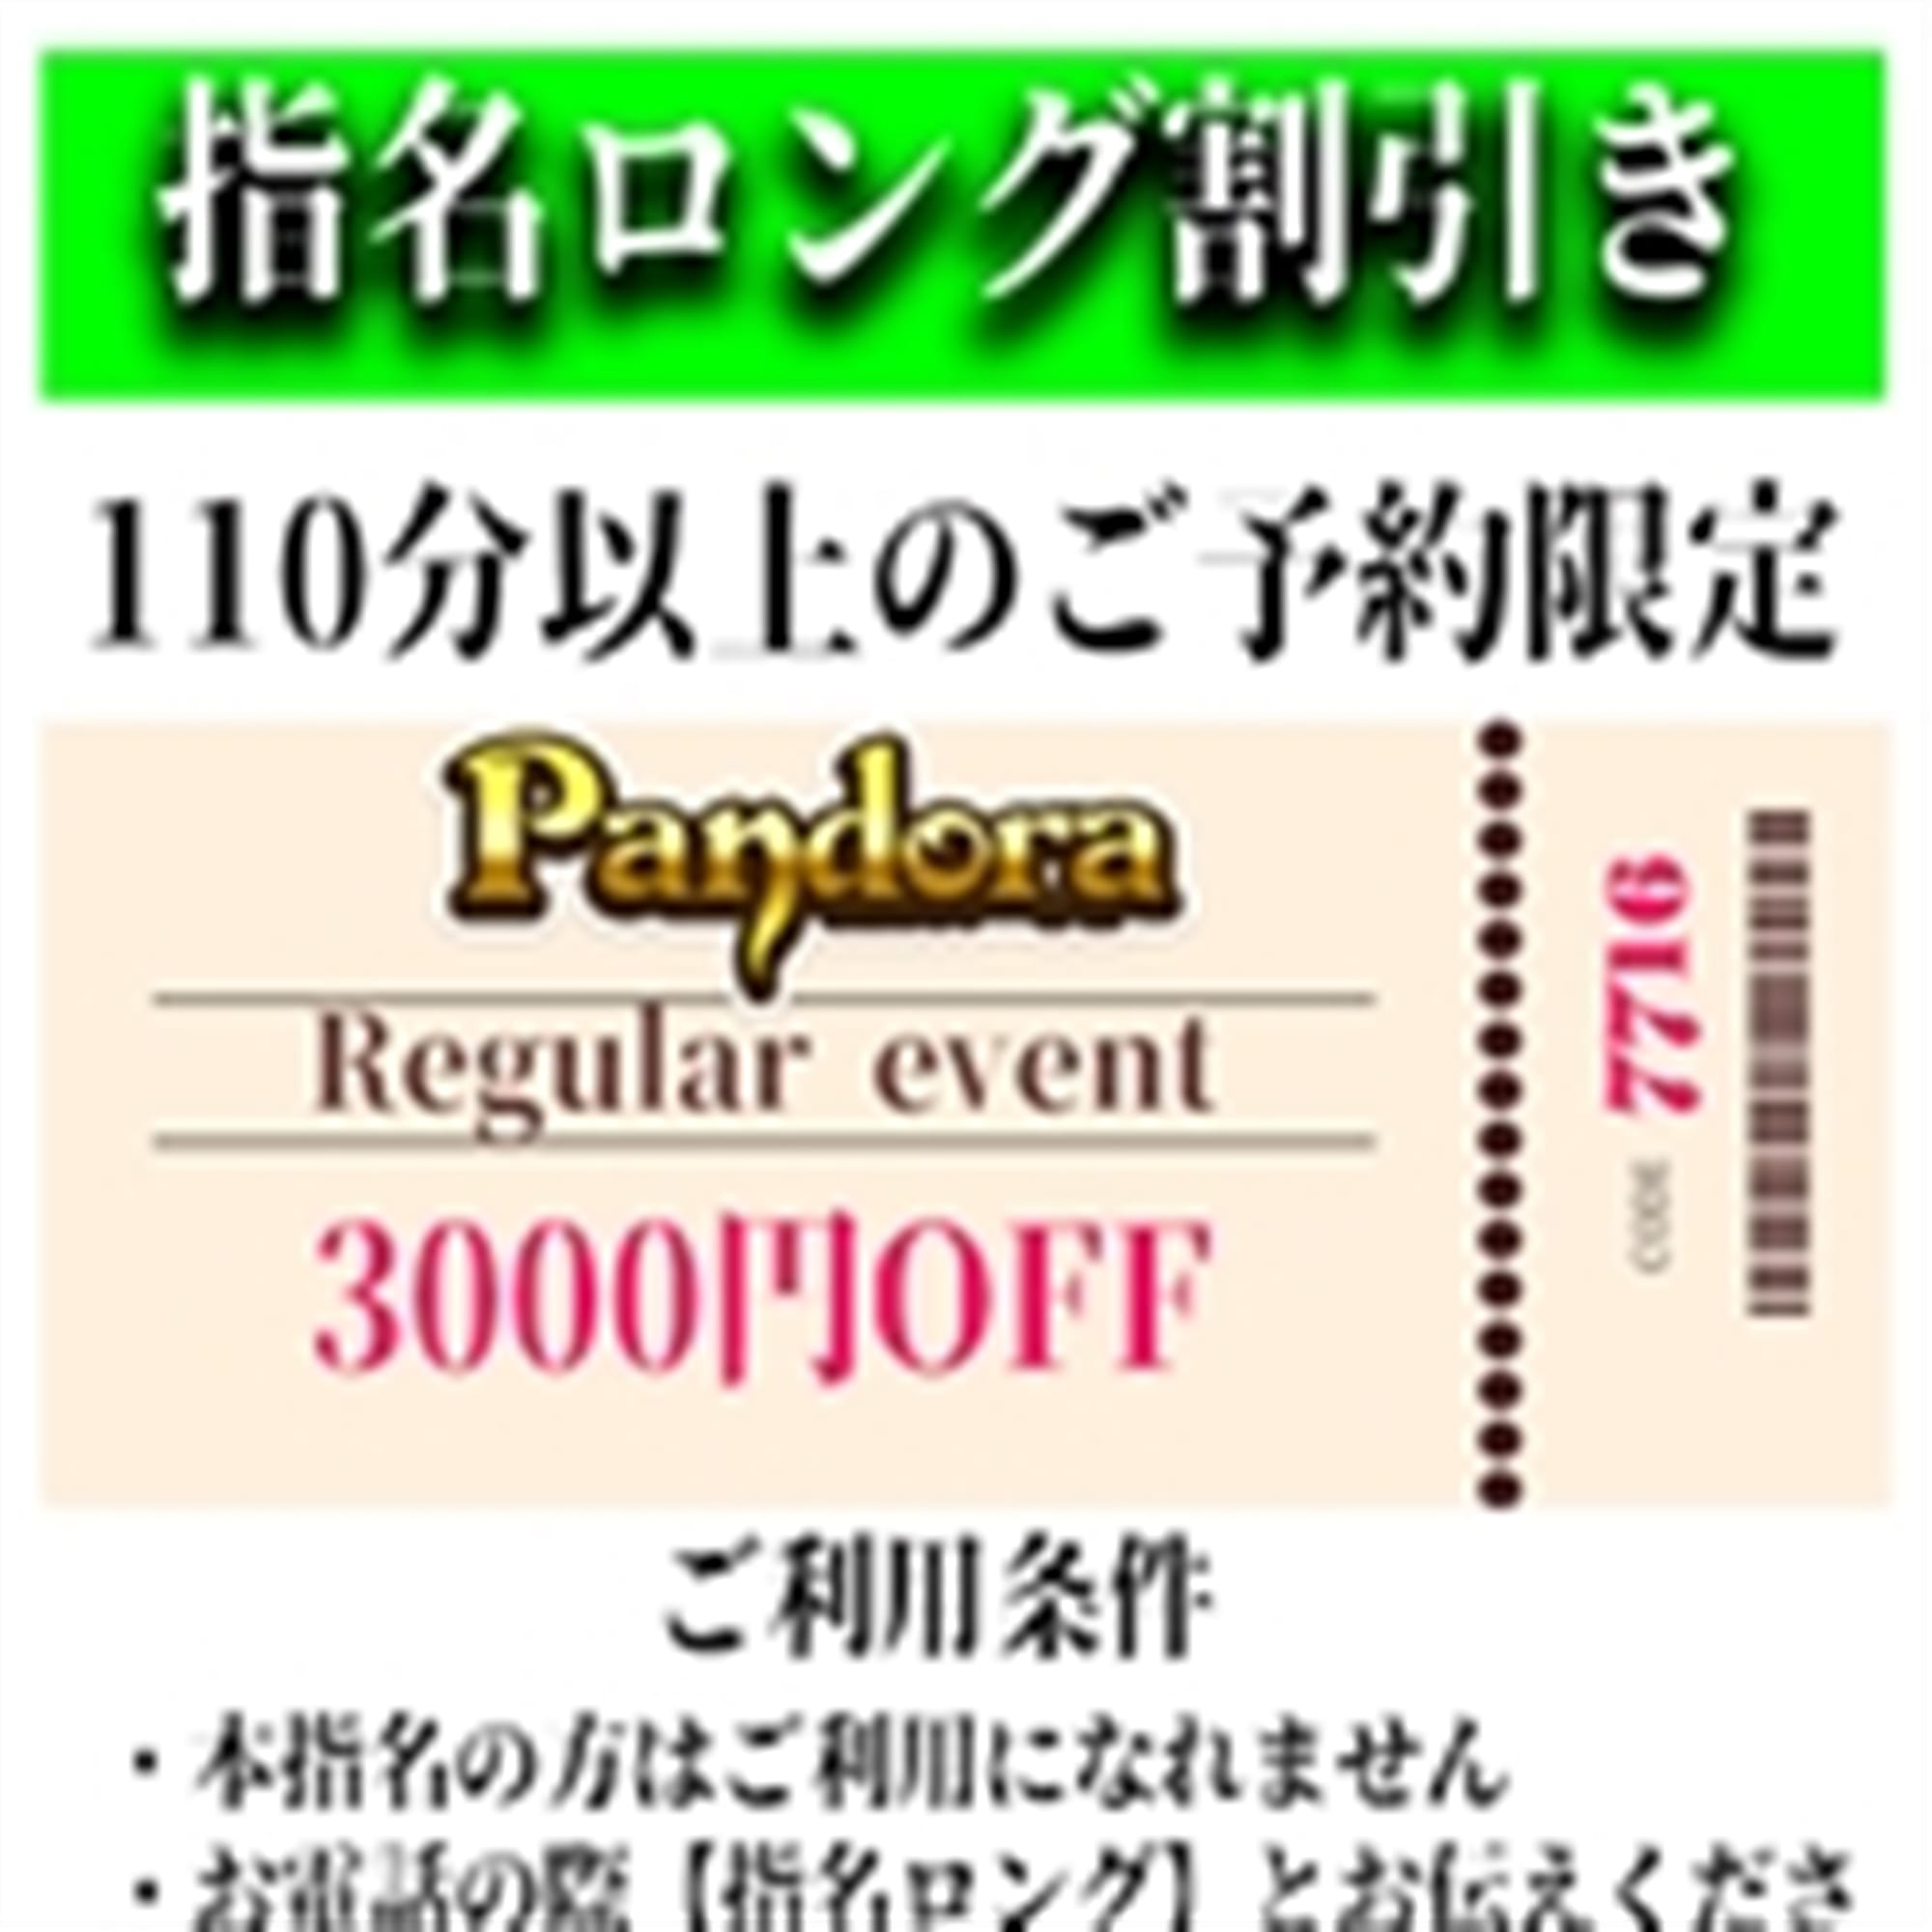 「ご指名のお客様も遊べるロングコース割引」04/26(金) 14:46 | Pandora(パンドラ)新潟のお得なニュース